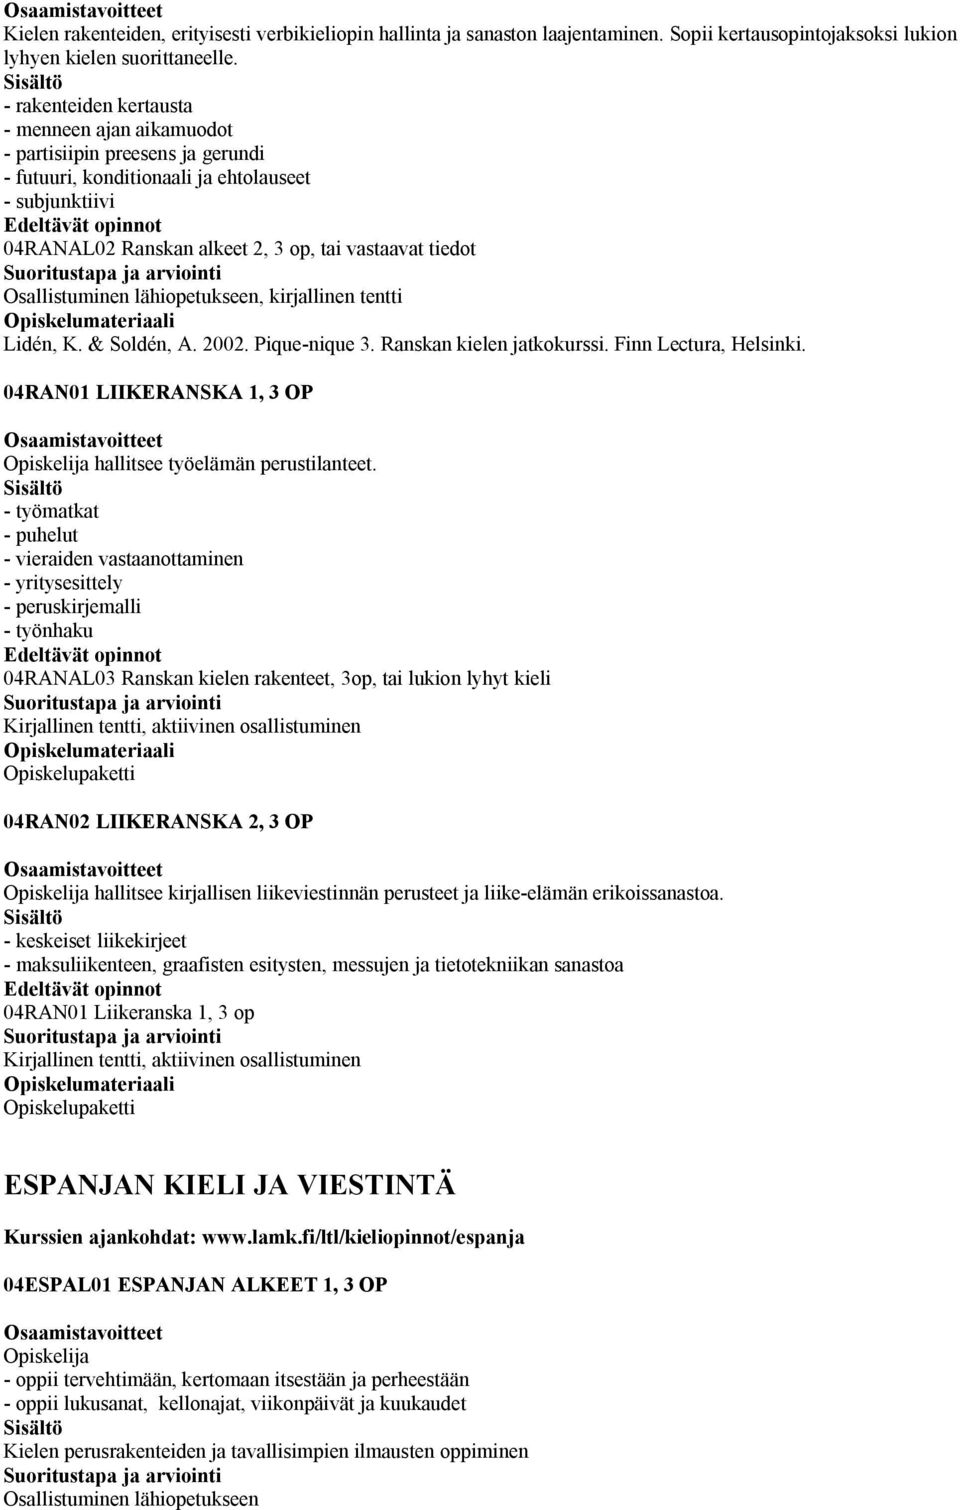 Osallistuminen lähiopetukseen, kirjallinen tentti Lidén, K. & Soldén, A. 2002. Pique-nique 3. Ranskan kielen jatkokurssi. Finn Lectura, Helsinki.